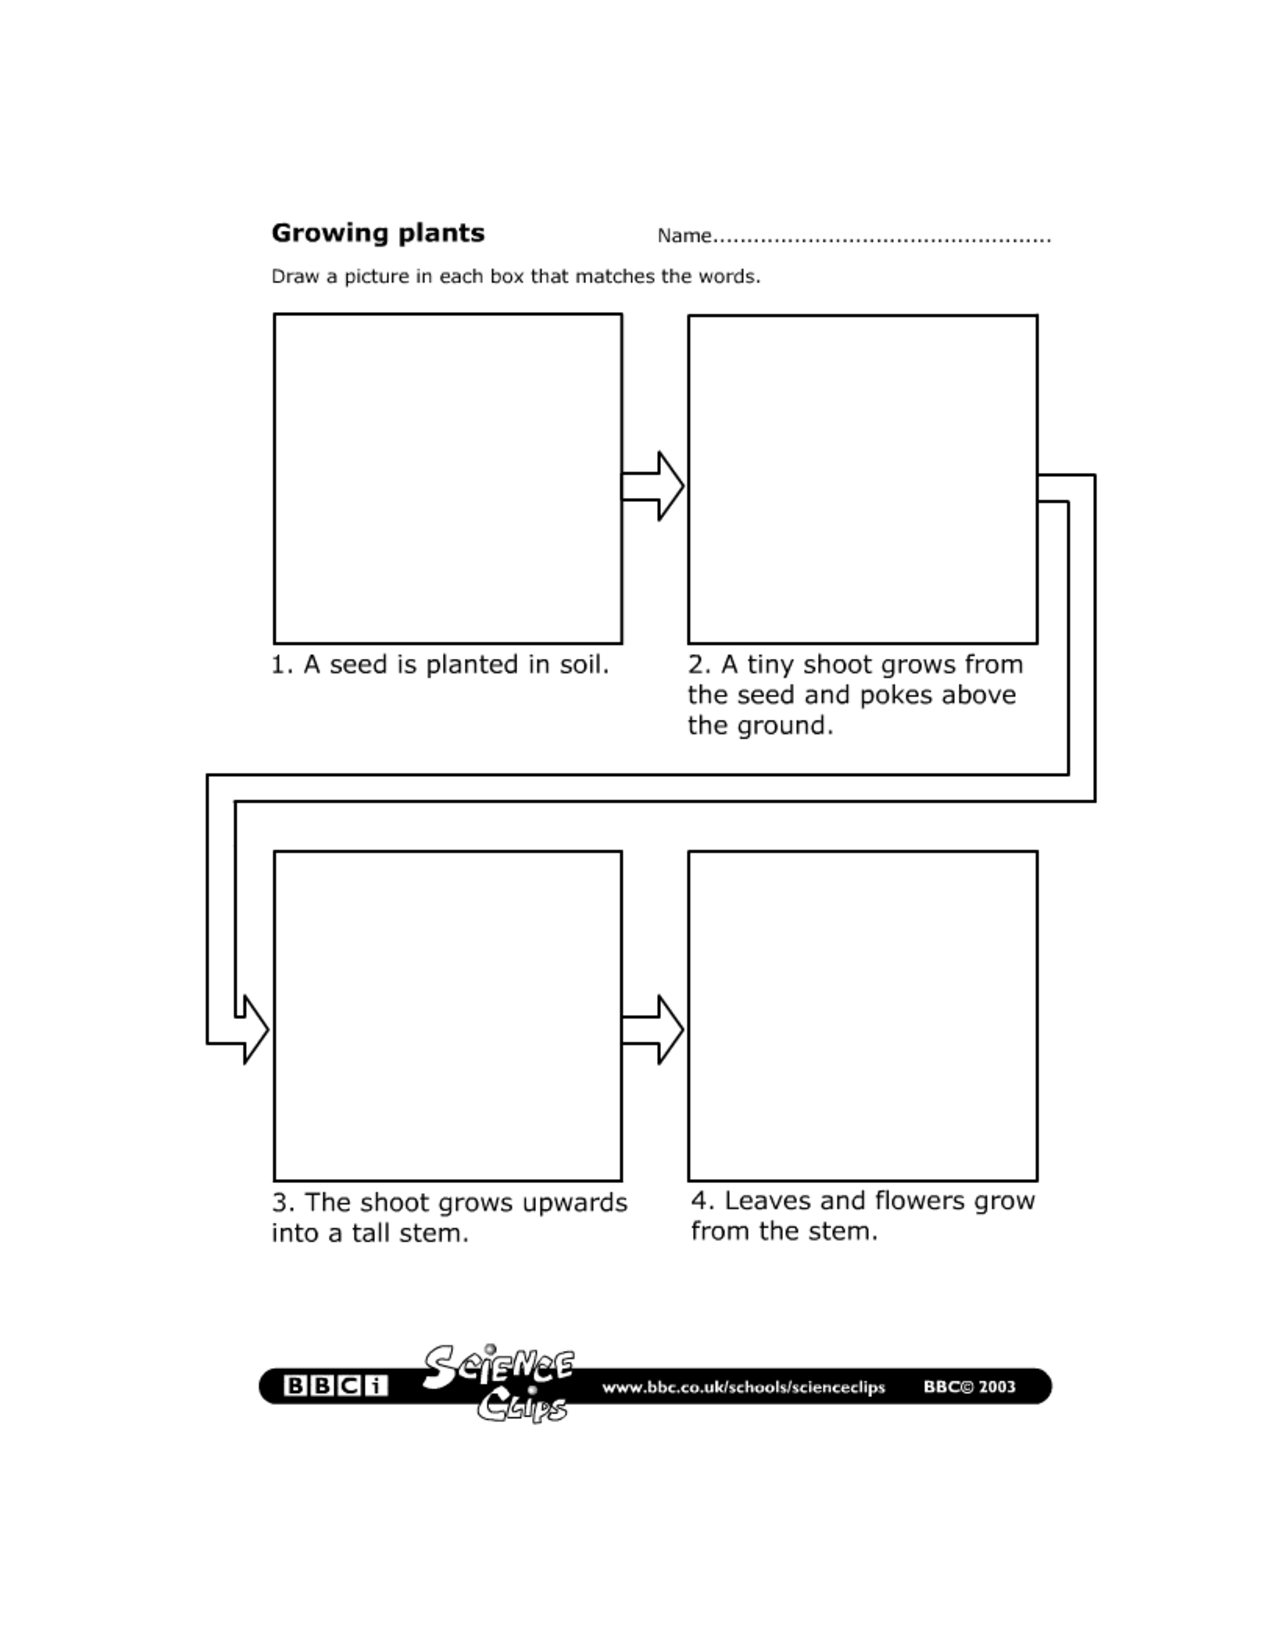 Growing Plants Worksheet Image